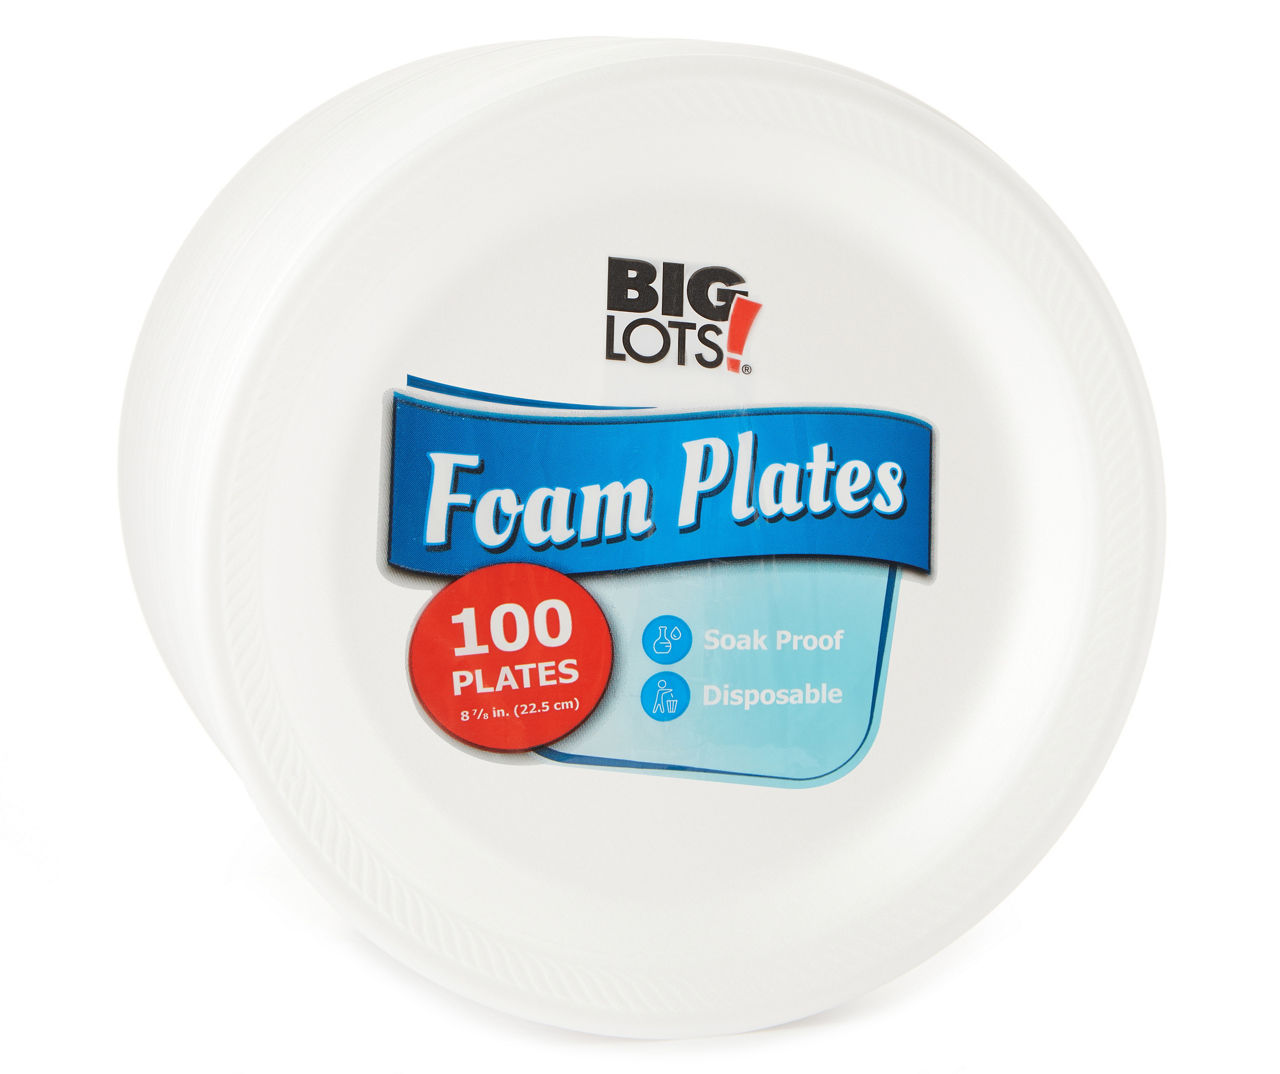 Big Lots 8 7/8 Foam Plates, 100-Count